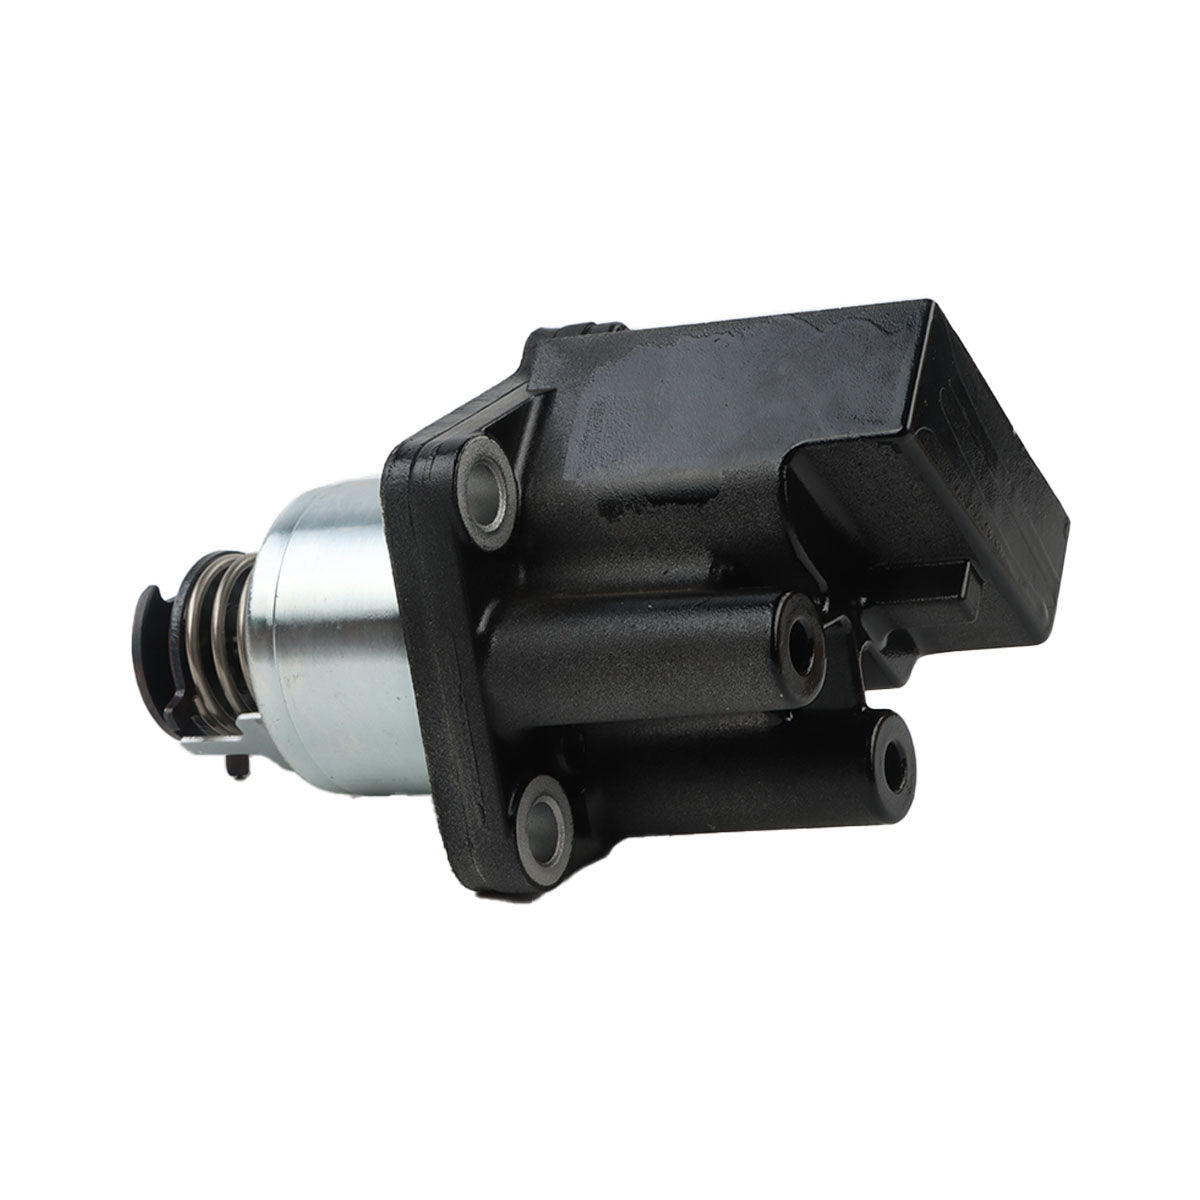 129927-61601 729975-51310 Fuel Pump Rack Actuator - Sinocmp